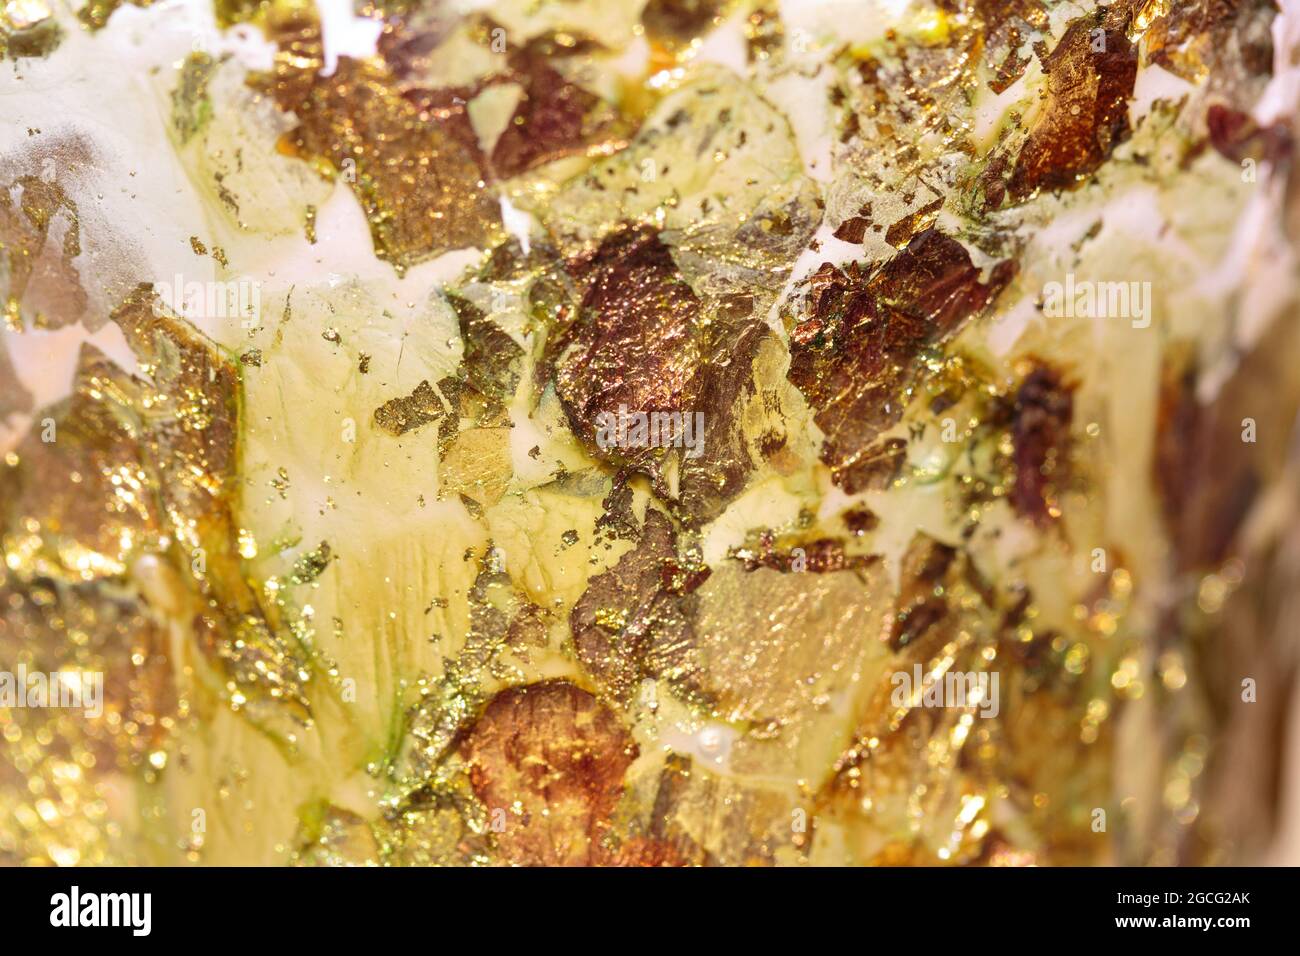 arrière-plan abstrait de mouchetures éparses, étincelantes, de couleur or, jaune, ambre, cuivre et blanc avec une faible profondeur de champ Banque D'Images